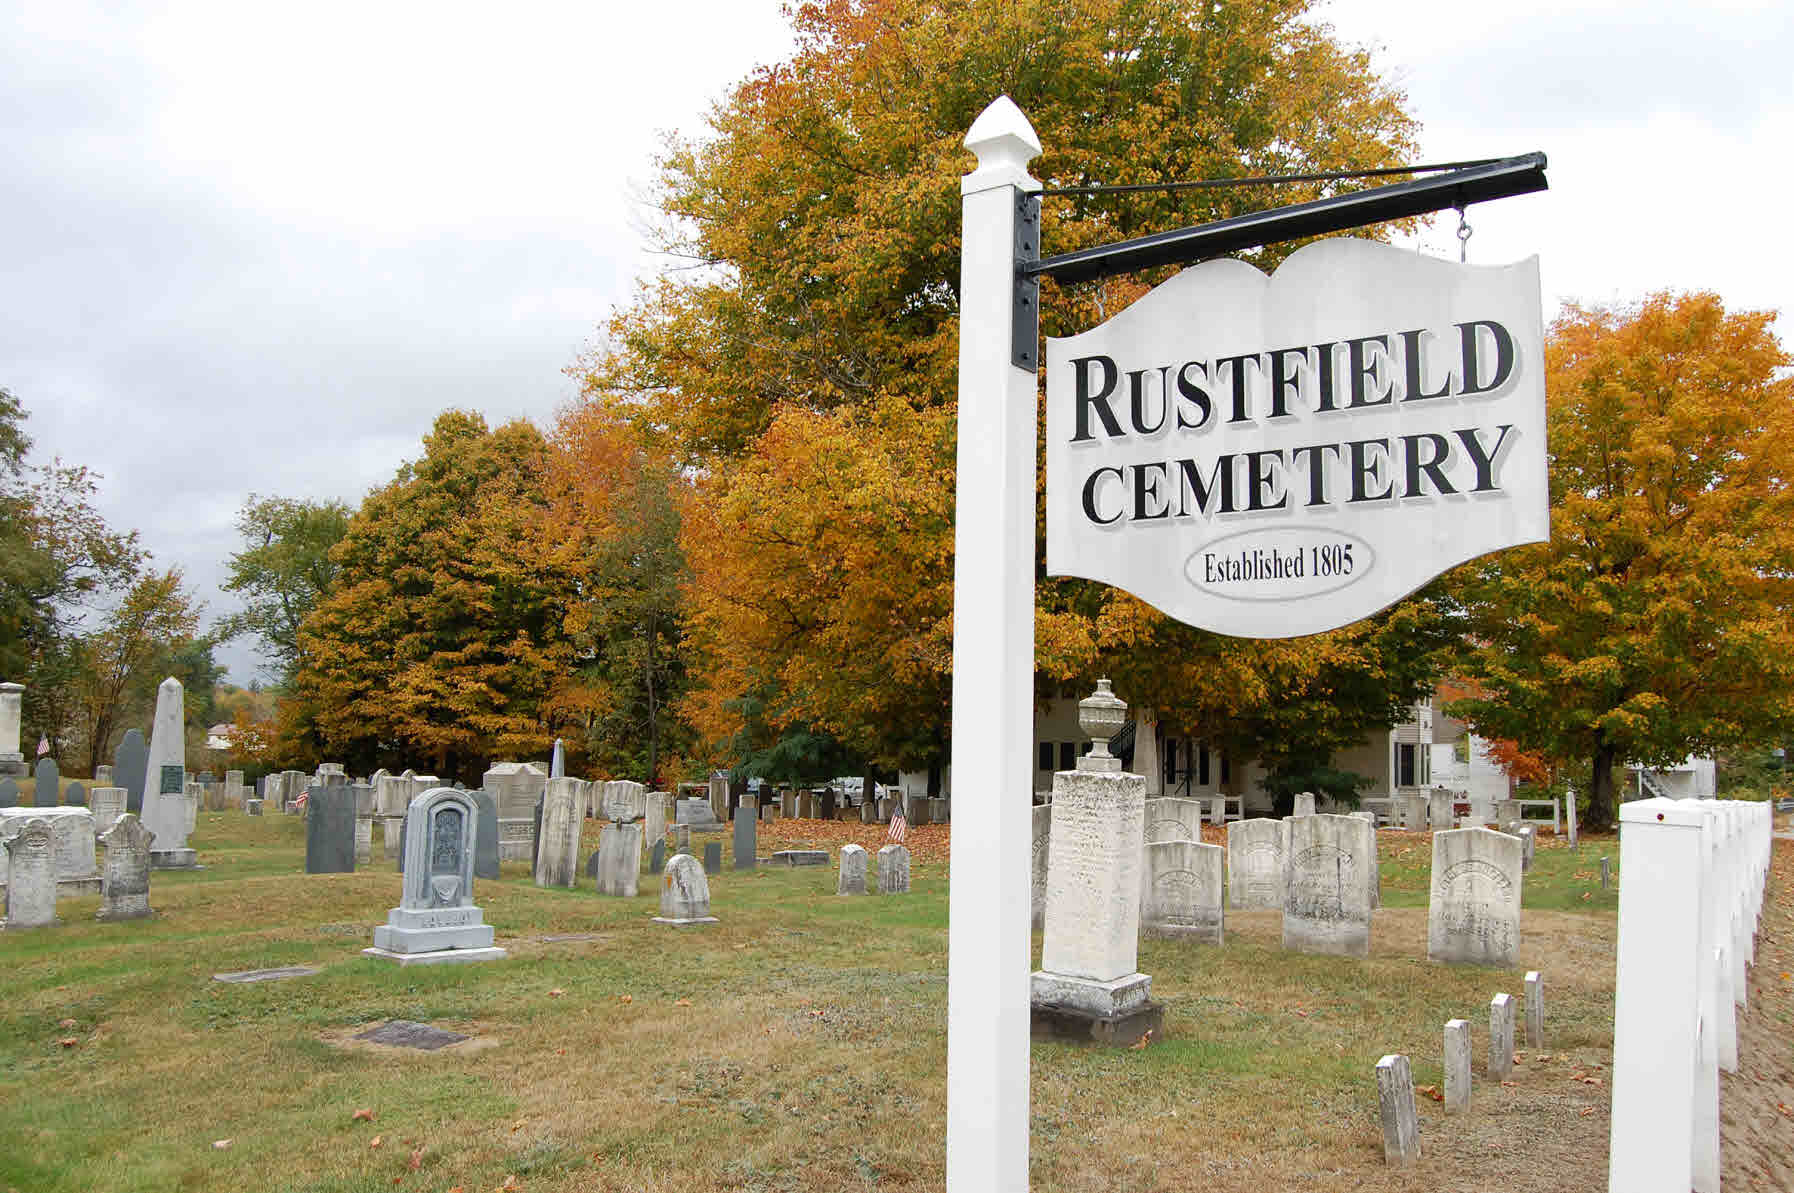 Rustfield Cemetery